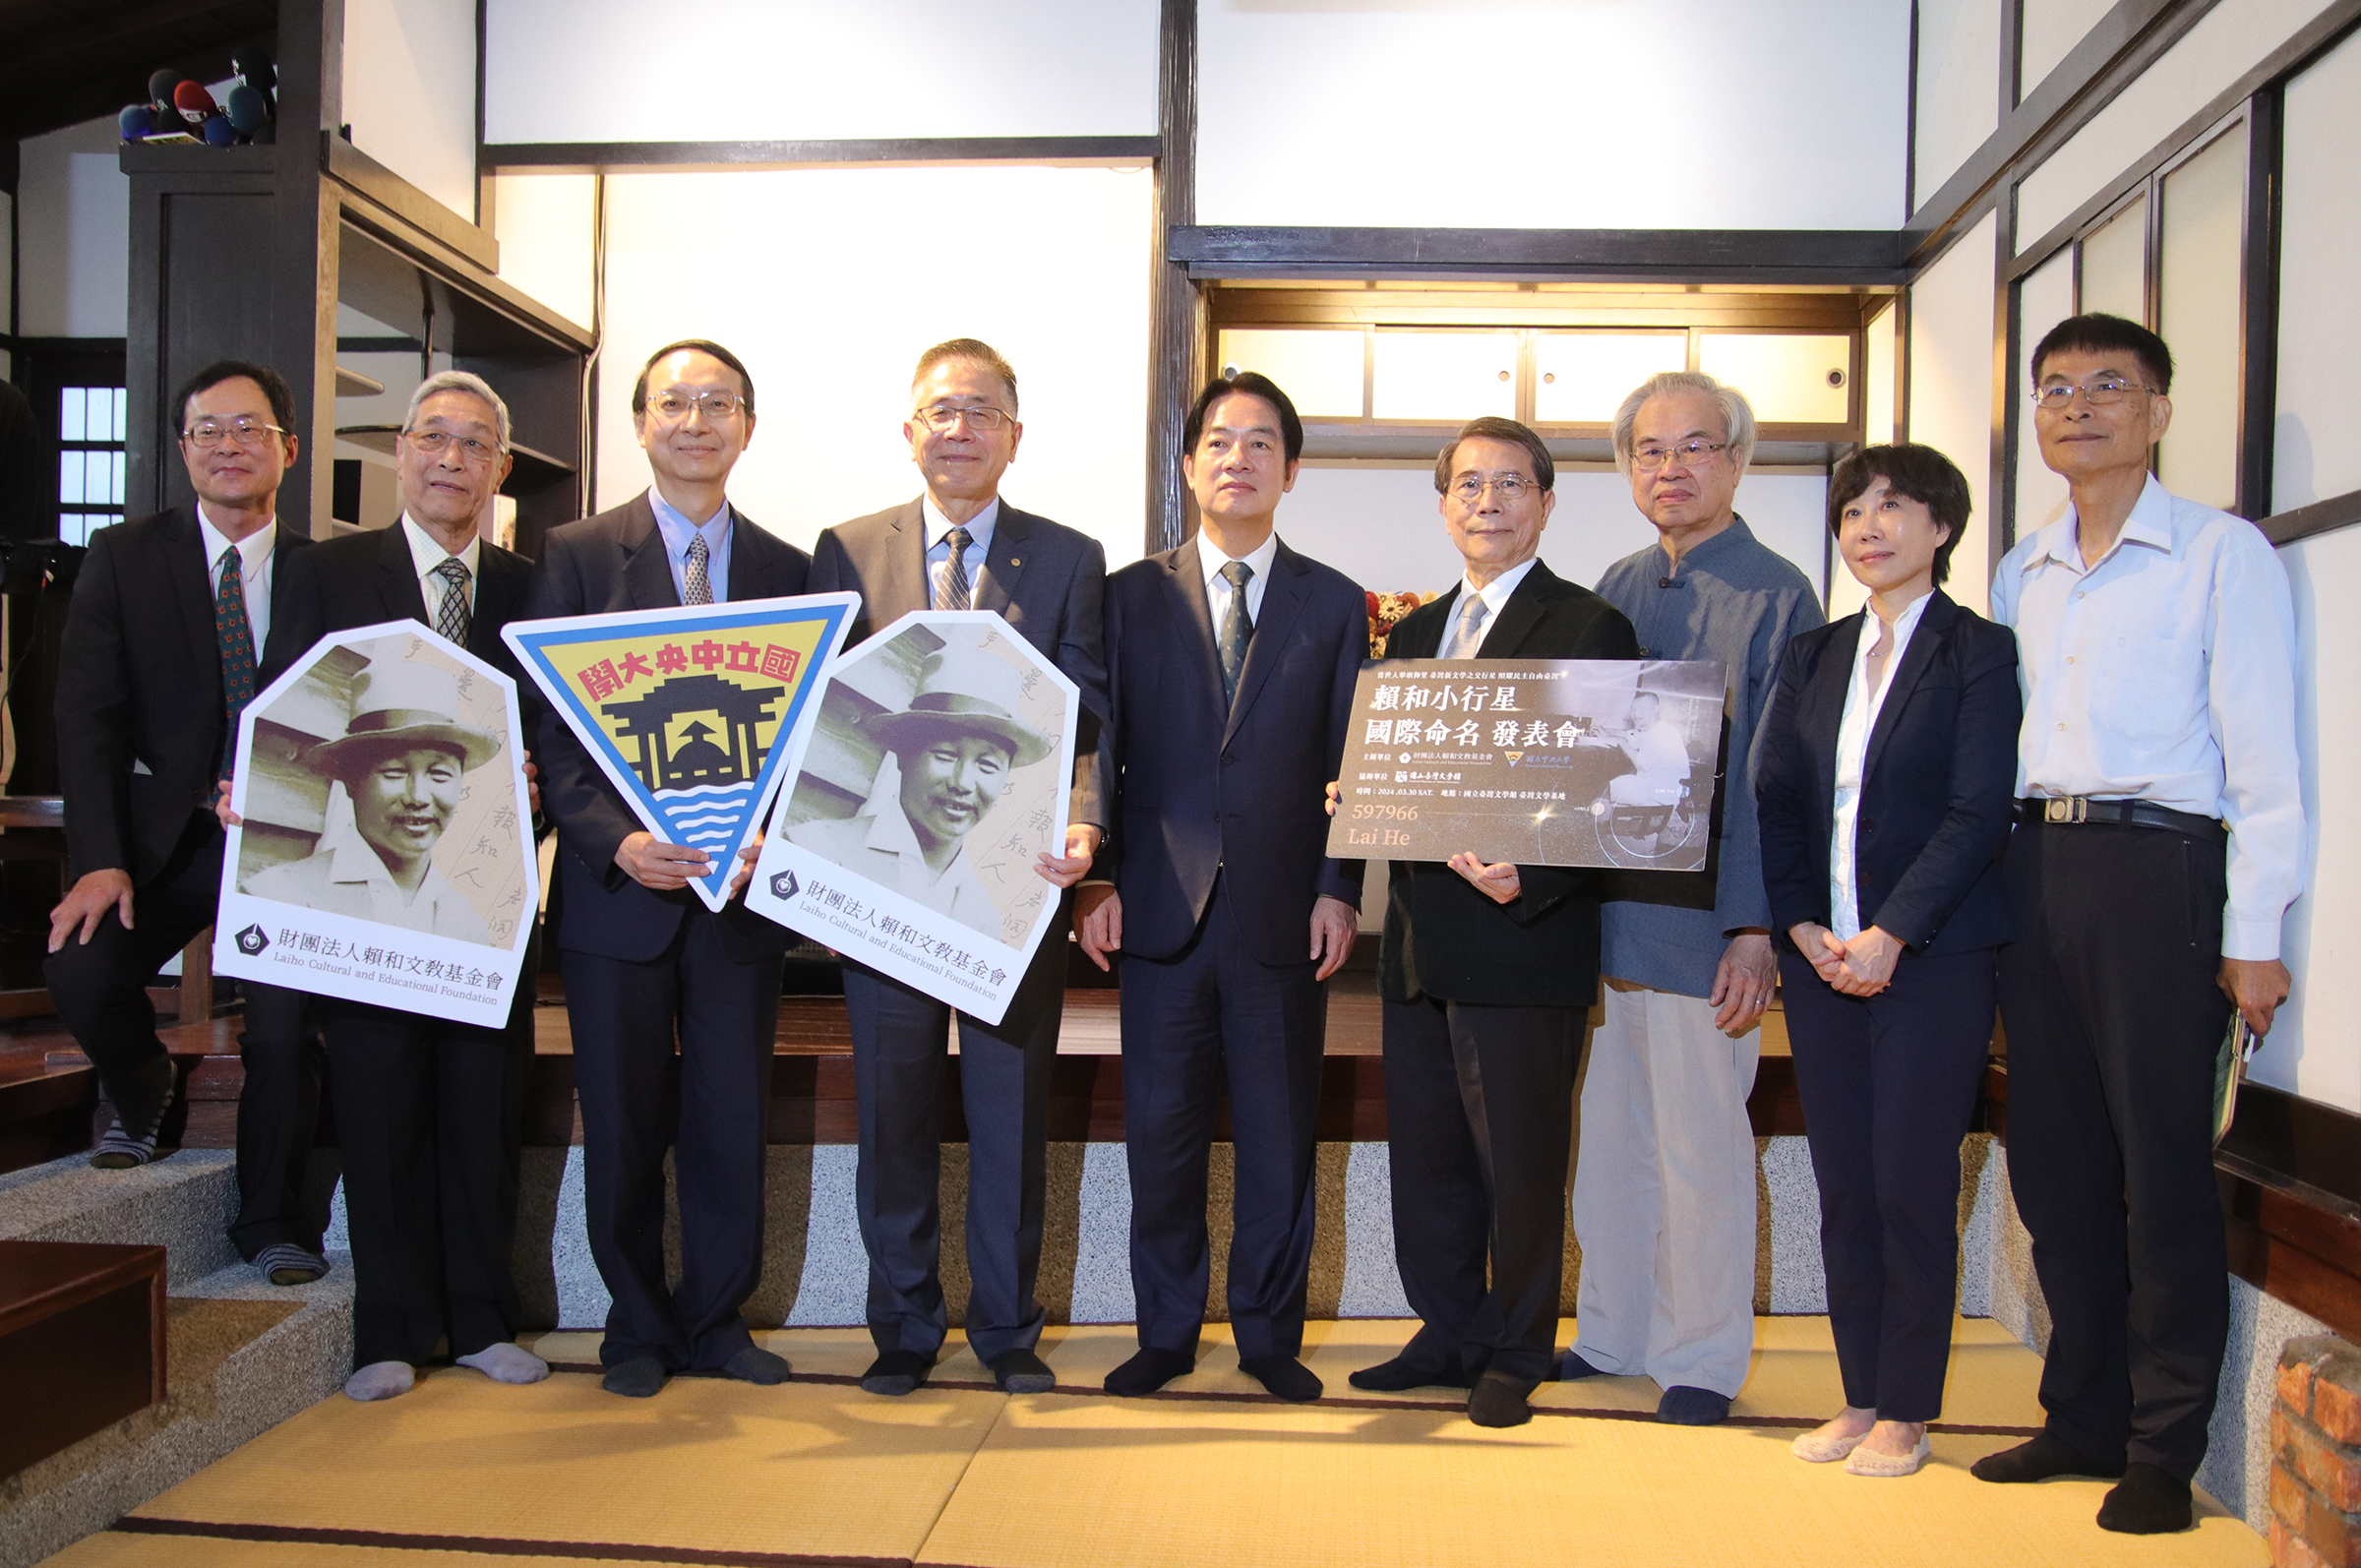 感念賴和先生對台灣的卓越貢獻，副總統等重要貴賓齊聚臺灣文學基地，進行「賴和小行星國際發表會」。陳如枝攝